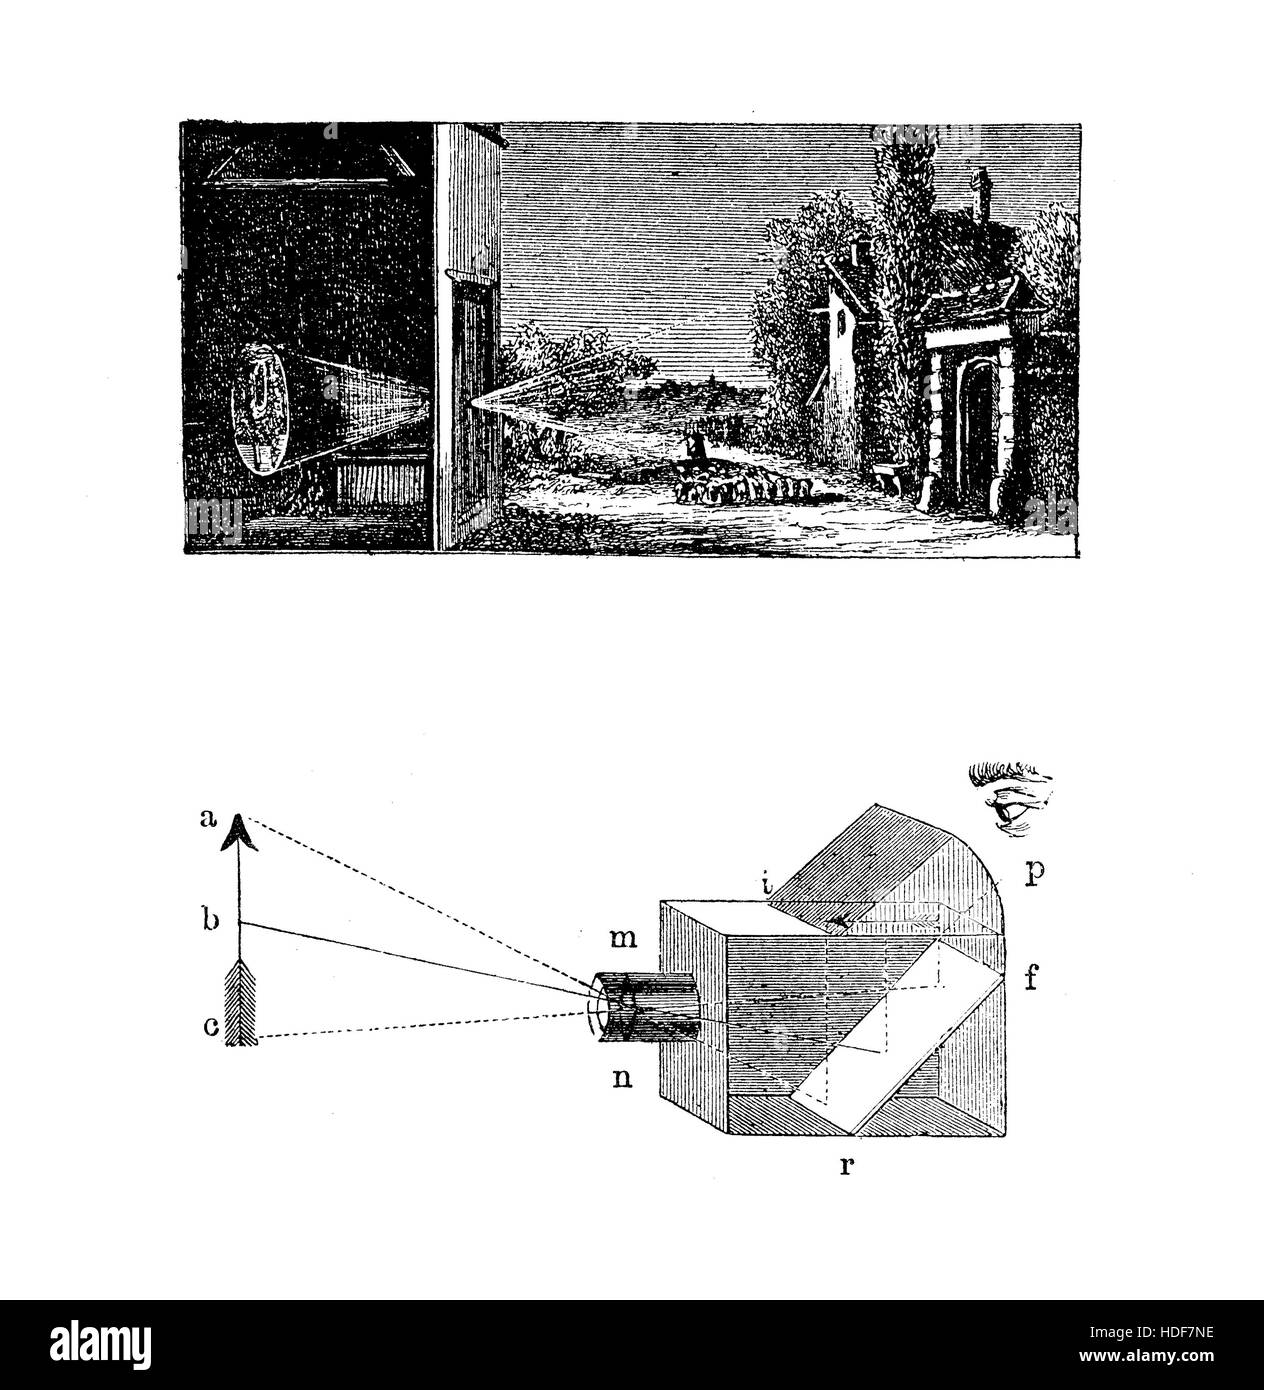 Gravur, beschreibt, wie ein Kamerabild Oscura oder Lochkamera funktioniert: eine Szene dürfte umgekehrt und umgekehrt auf einem Bildschirm durch ein kleines Loch mit Farbe und Perspektive erhalten. Kamera Oscura mit einem Objektiv wurde als Fotokamera weiter entwickelt. Stockfoto